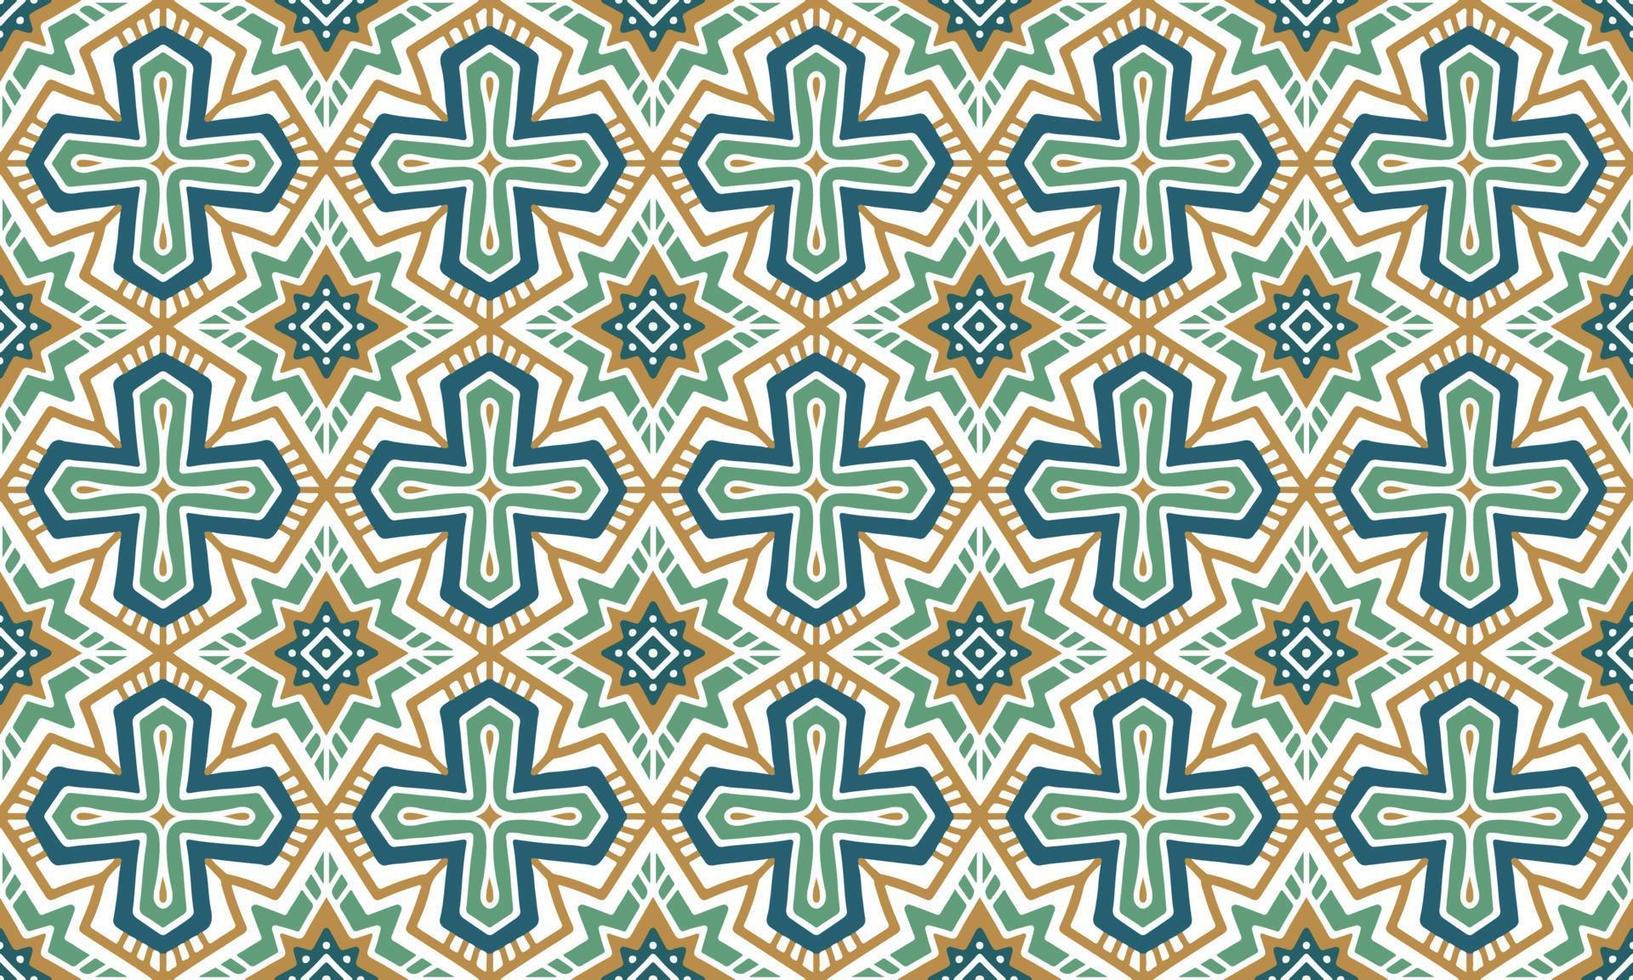 fundo étnico abstrato bonito verde escuro geométrico tribal ikat motivo popular árabe oriental padrão nativo design tradicional,tapete,papel de parede,vestuário,tecido,embrulho,impressão,batik,folclórico,malha,vetor vetor